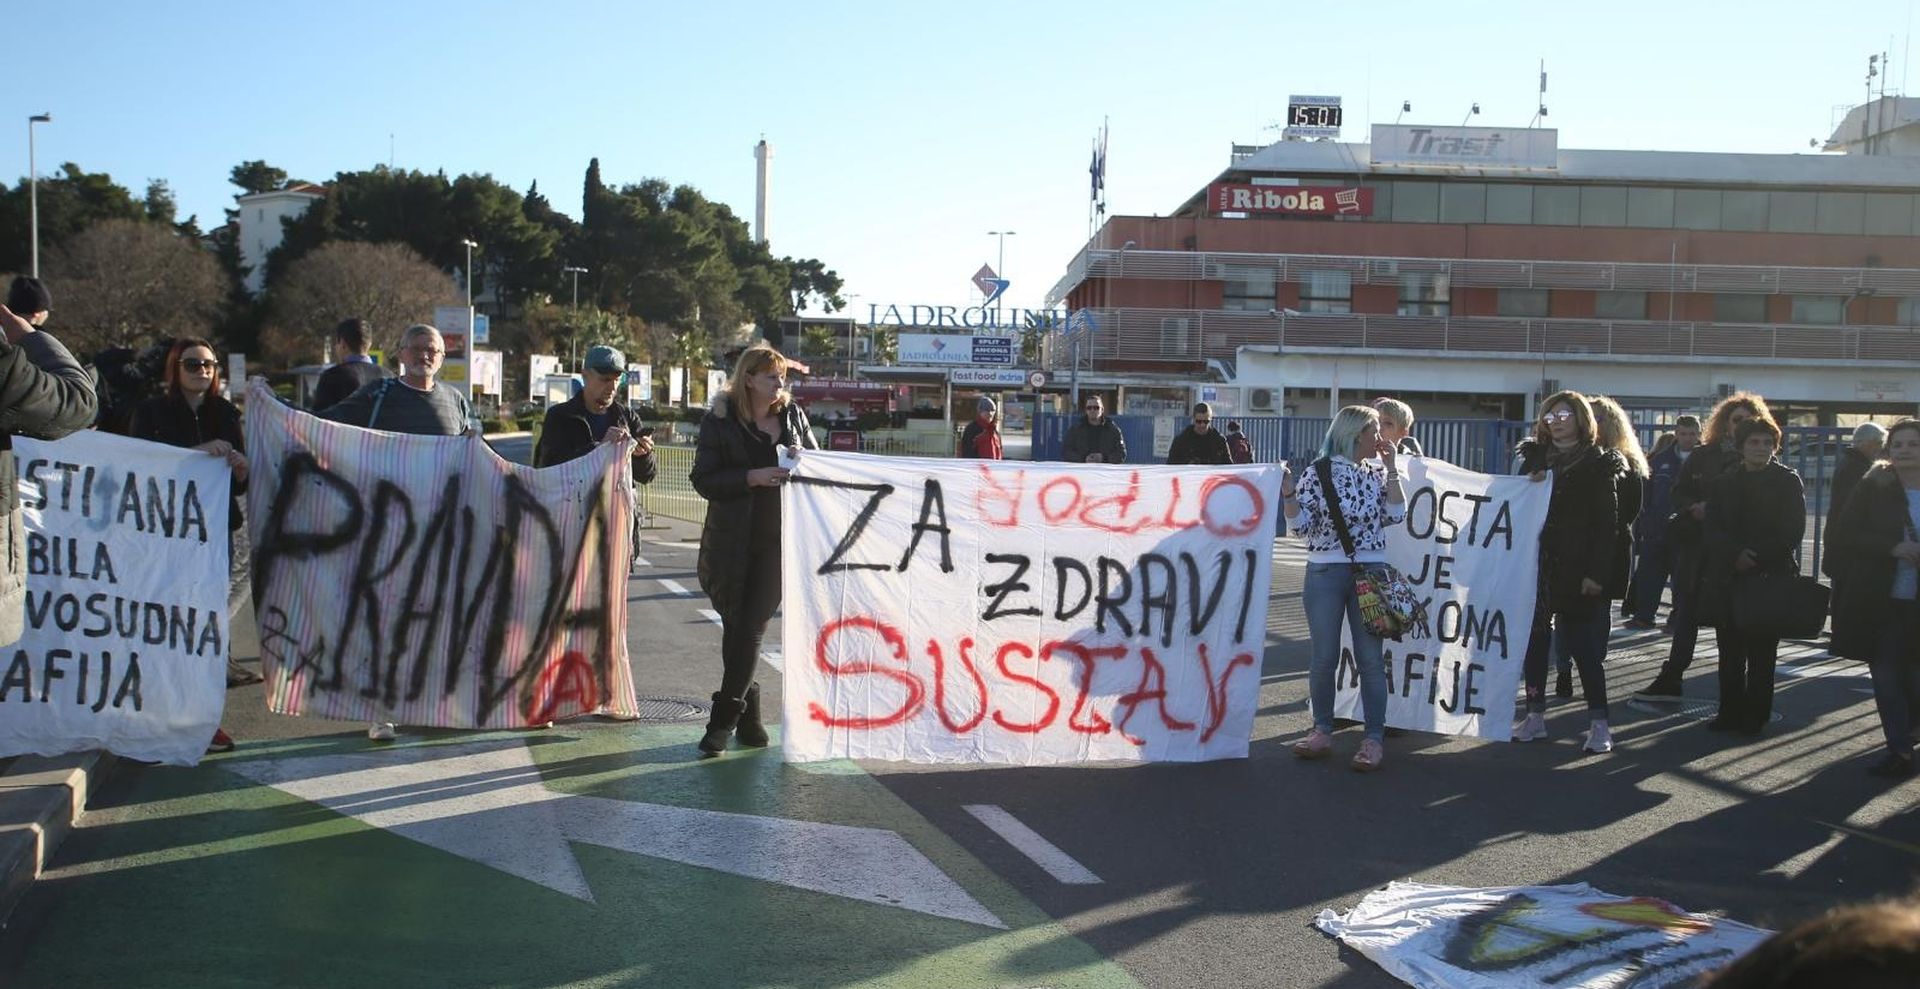 23.01.2020., Split - Gradjani organizirali miran mimohod kao reakciju na trostruko ubojstvo koje je nedavno zadesilo Split.
Photo: Ivo Cagalj/PIXSELL